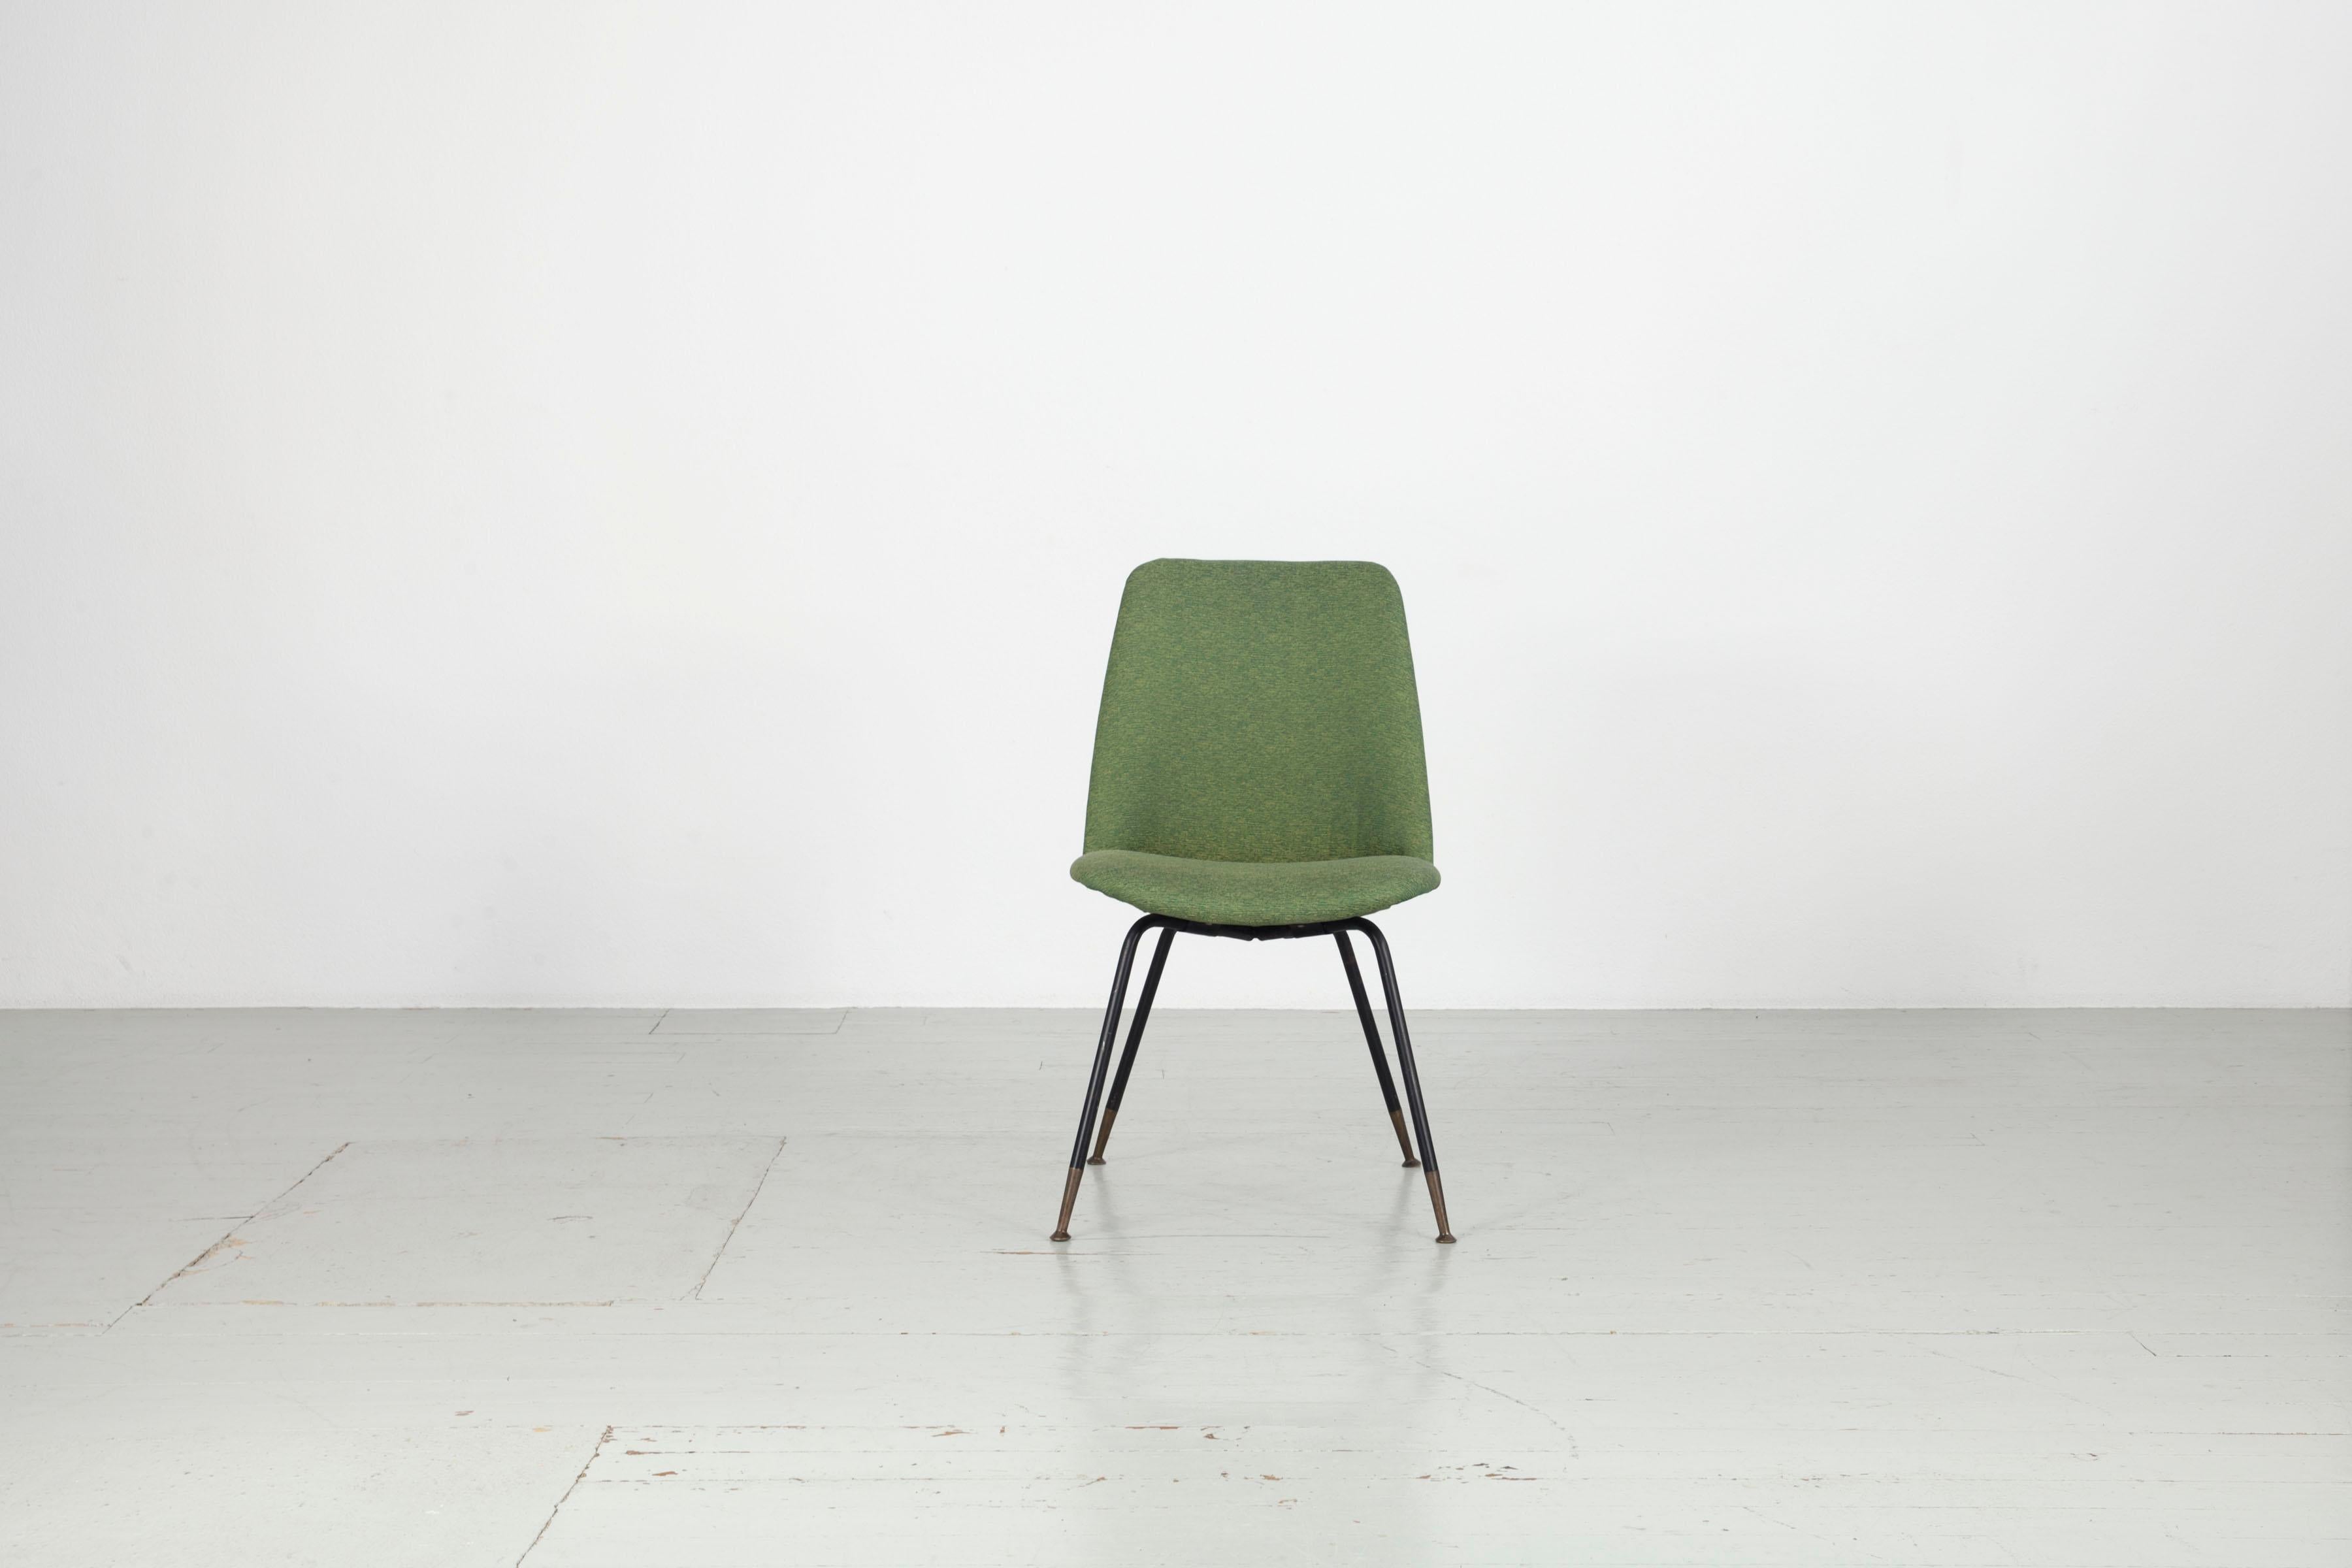 Satz von sechs Gastone Rinaldi-Stühlen, Modell DU 22
Struktur aus Sperrholz mit überzogenem Schaumstoff und schwarz lackierten Metallbeinen mit Messing
2 Stühle im Originalzustand mit blauem Kunstlederbezug und 4 Stühle mit grünem Stoffbezug, prod.